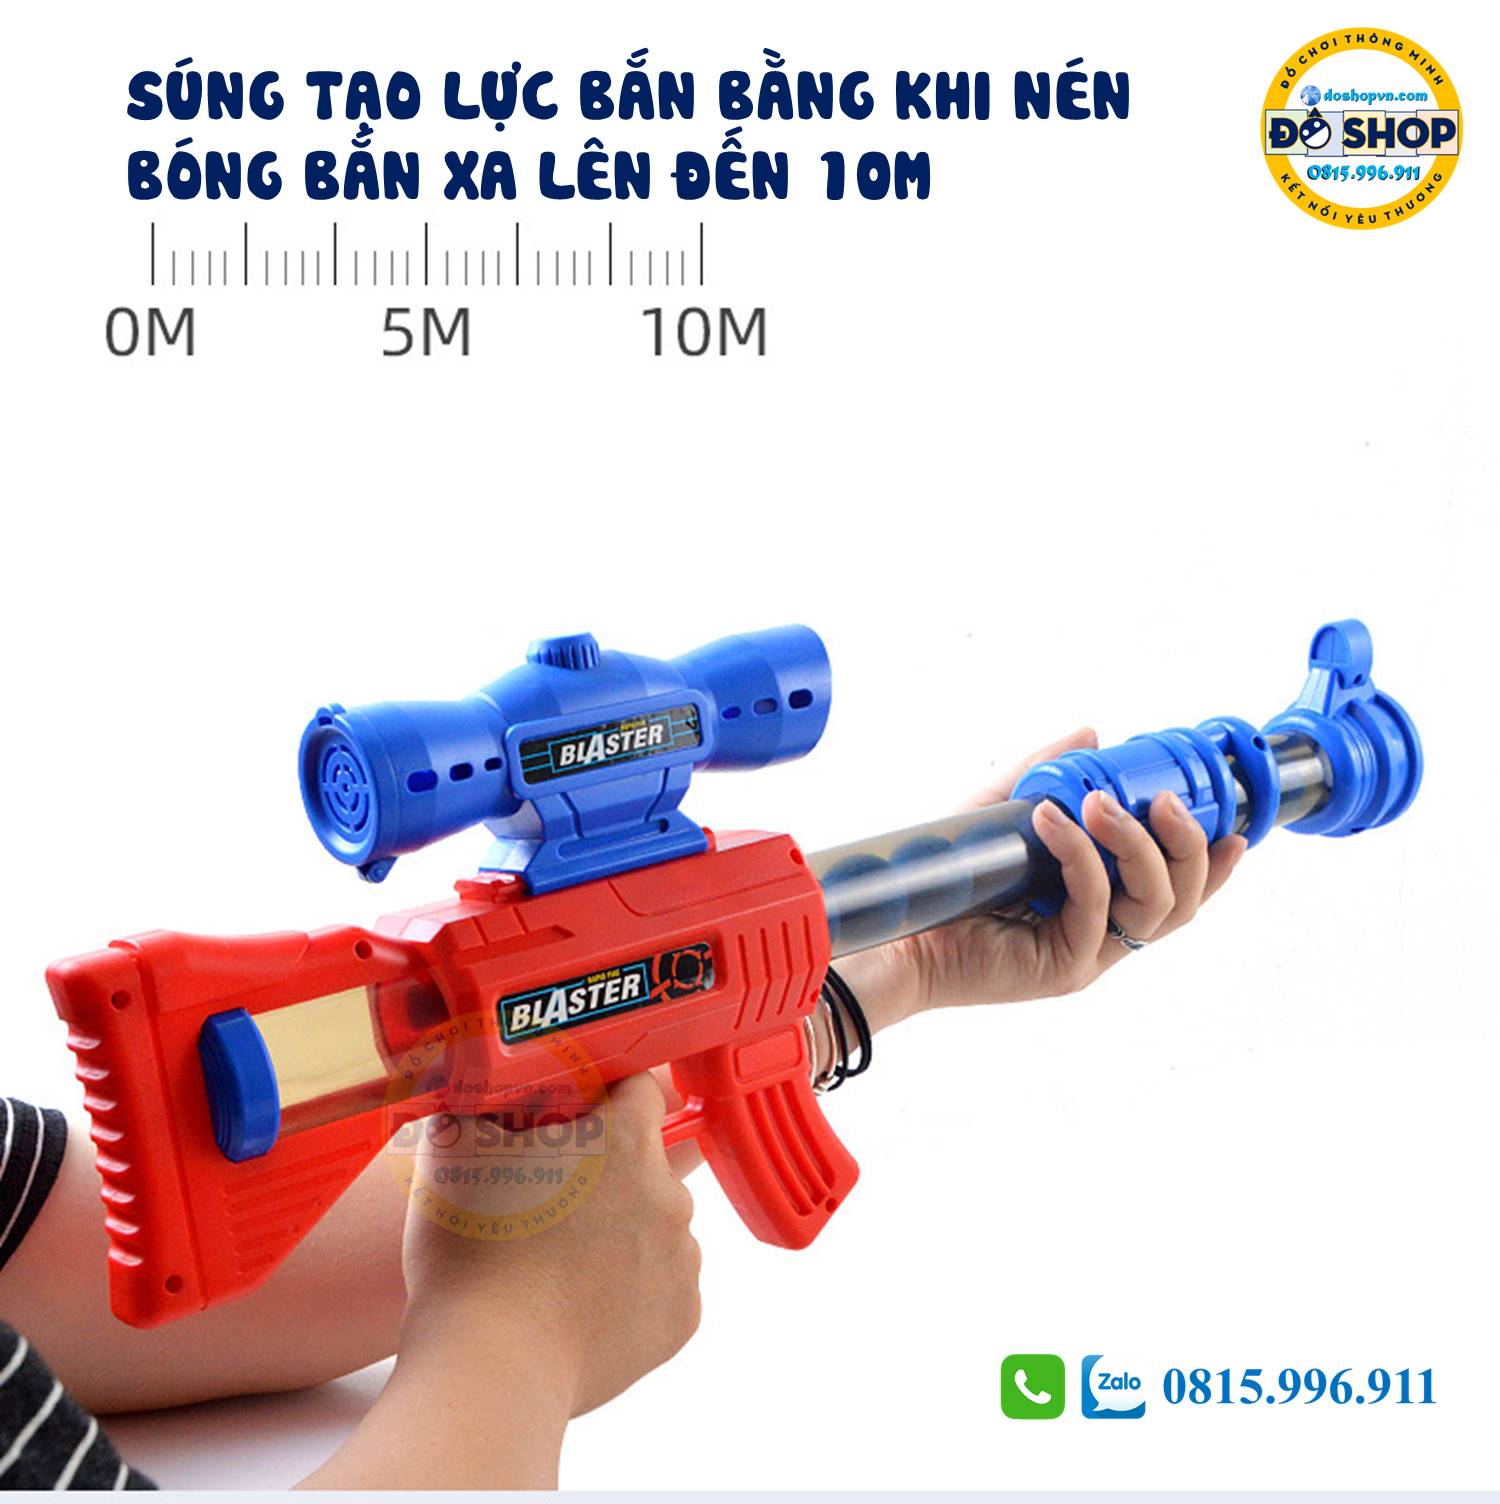 Khẩu súng của bộ đồ chơi súng bắn vịt thiết kế rất đẹp và cao cấp